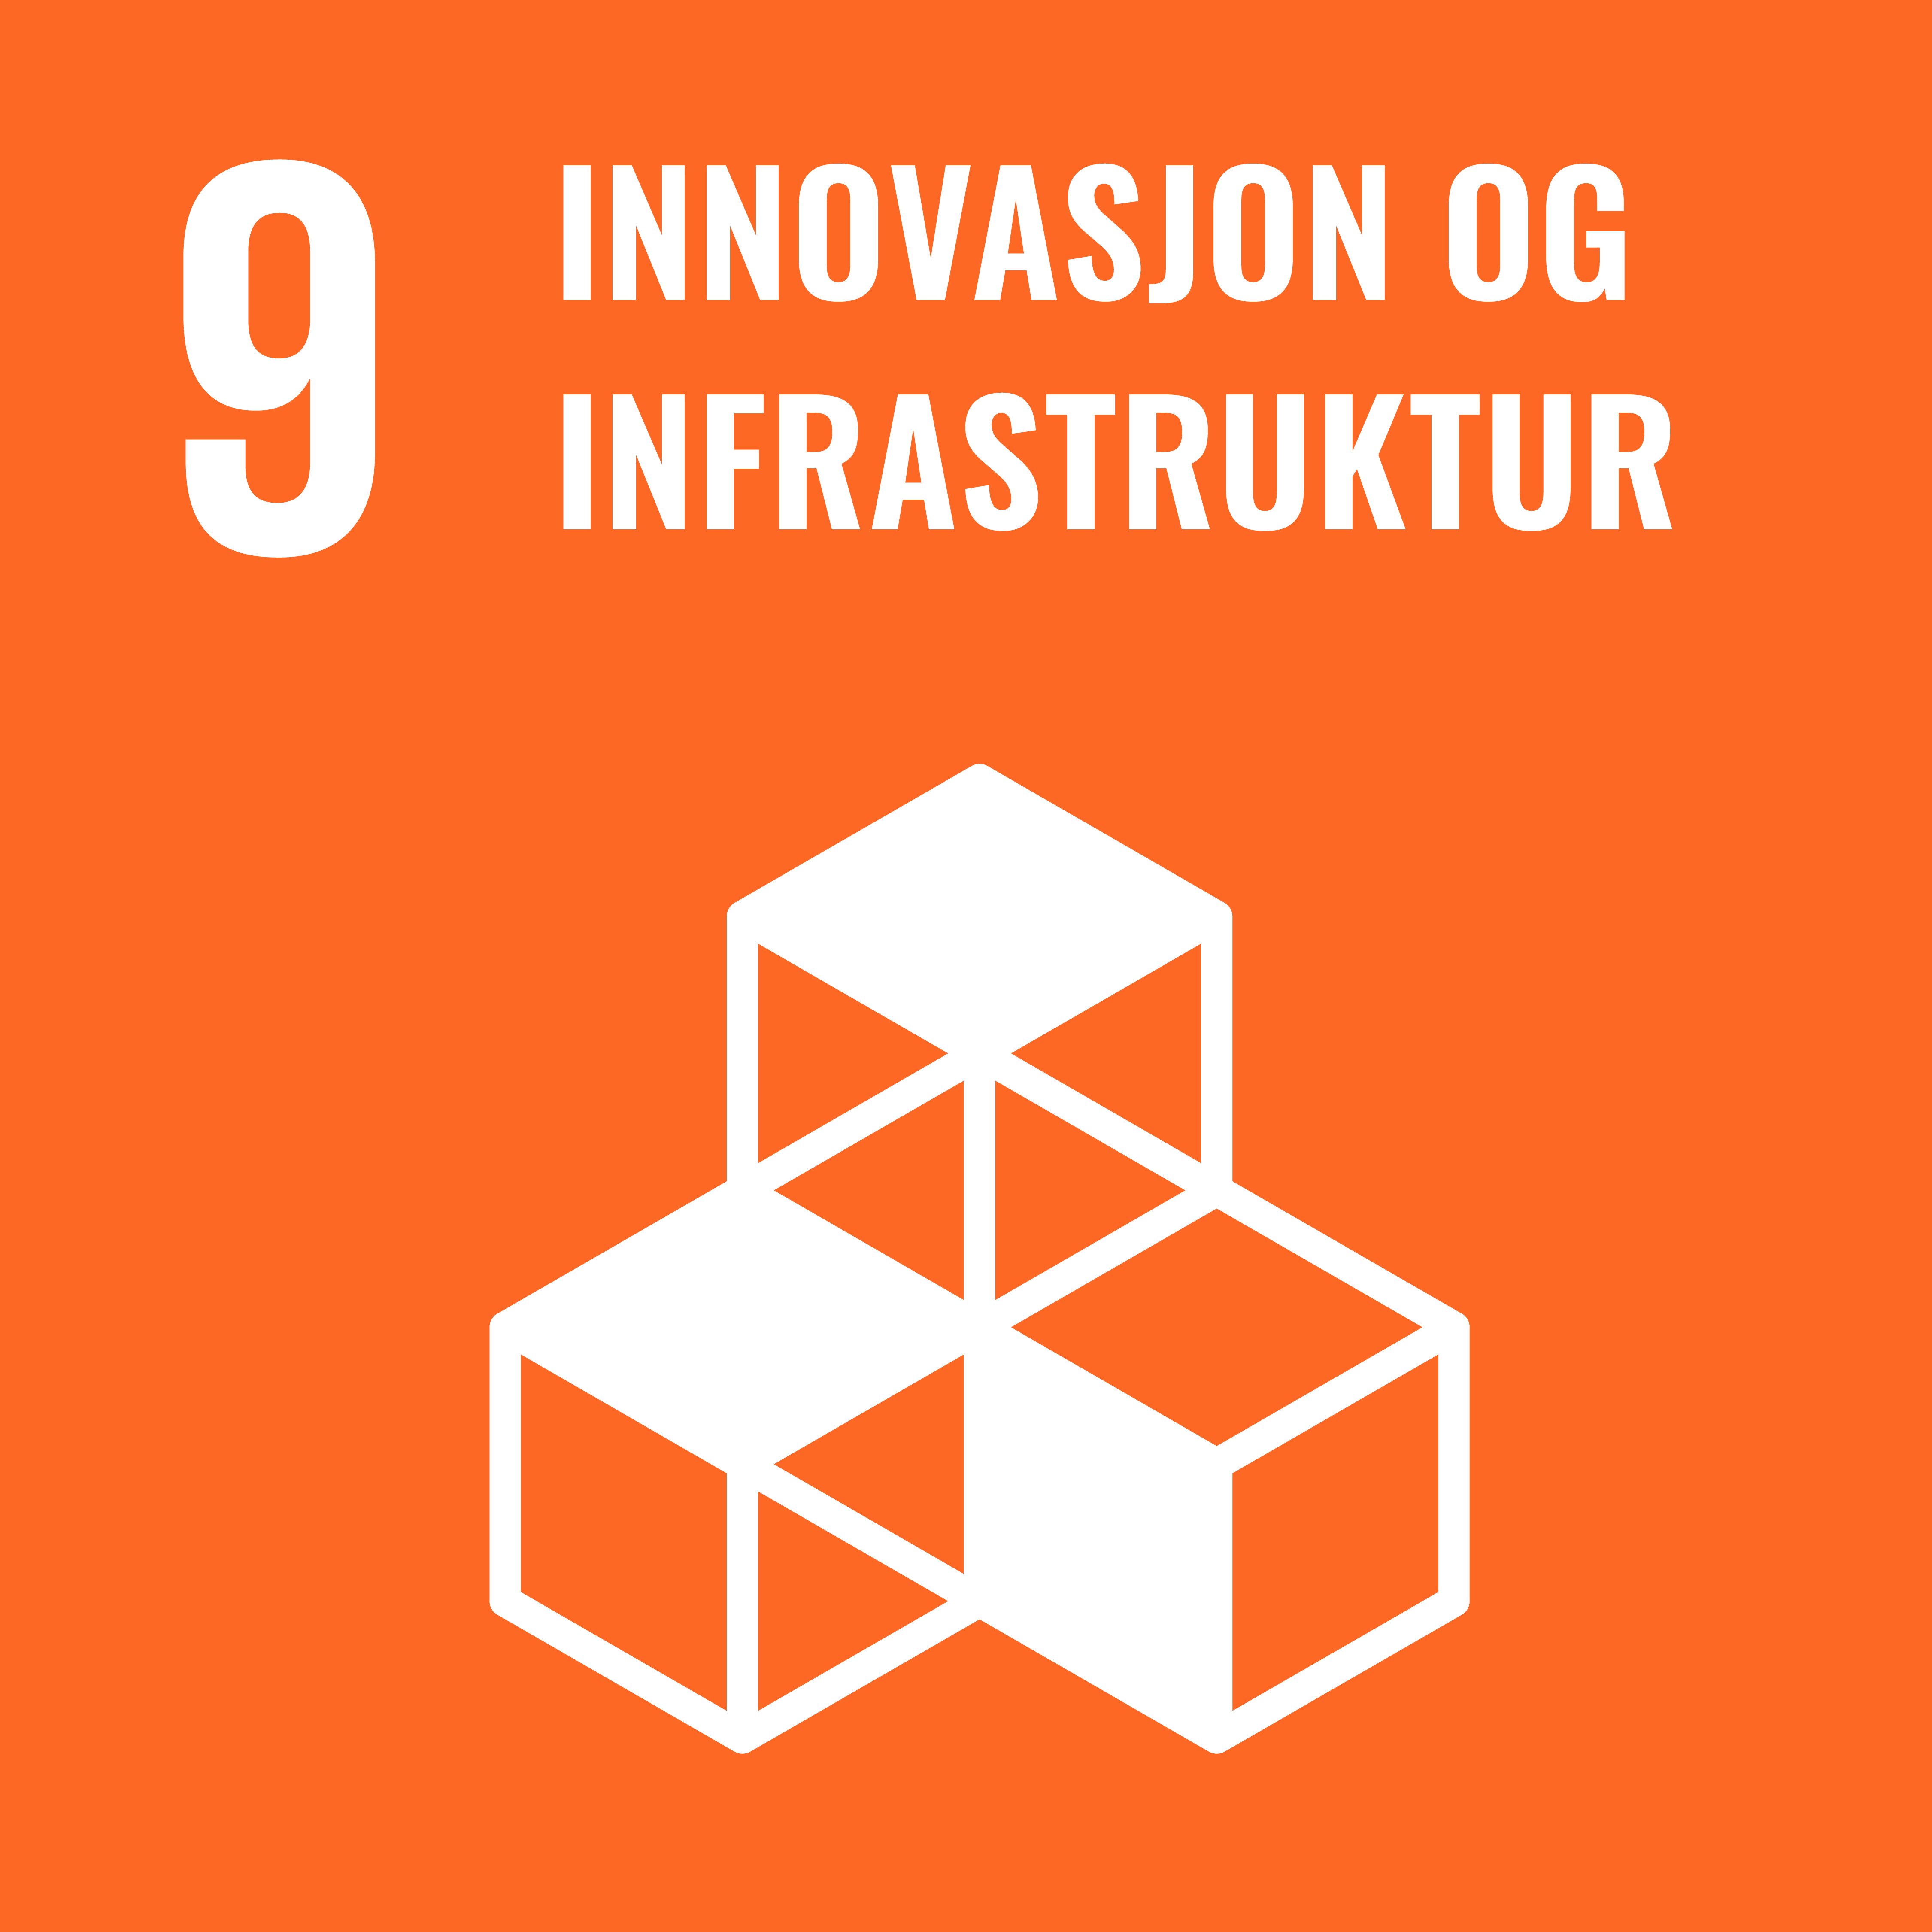 FNs bærekraftmål nummer 9 Innovasjon og infrastruktur. Lenke til bærekraftsmål 9.